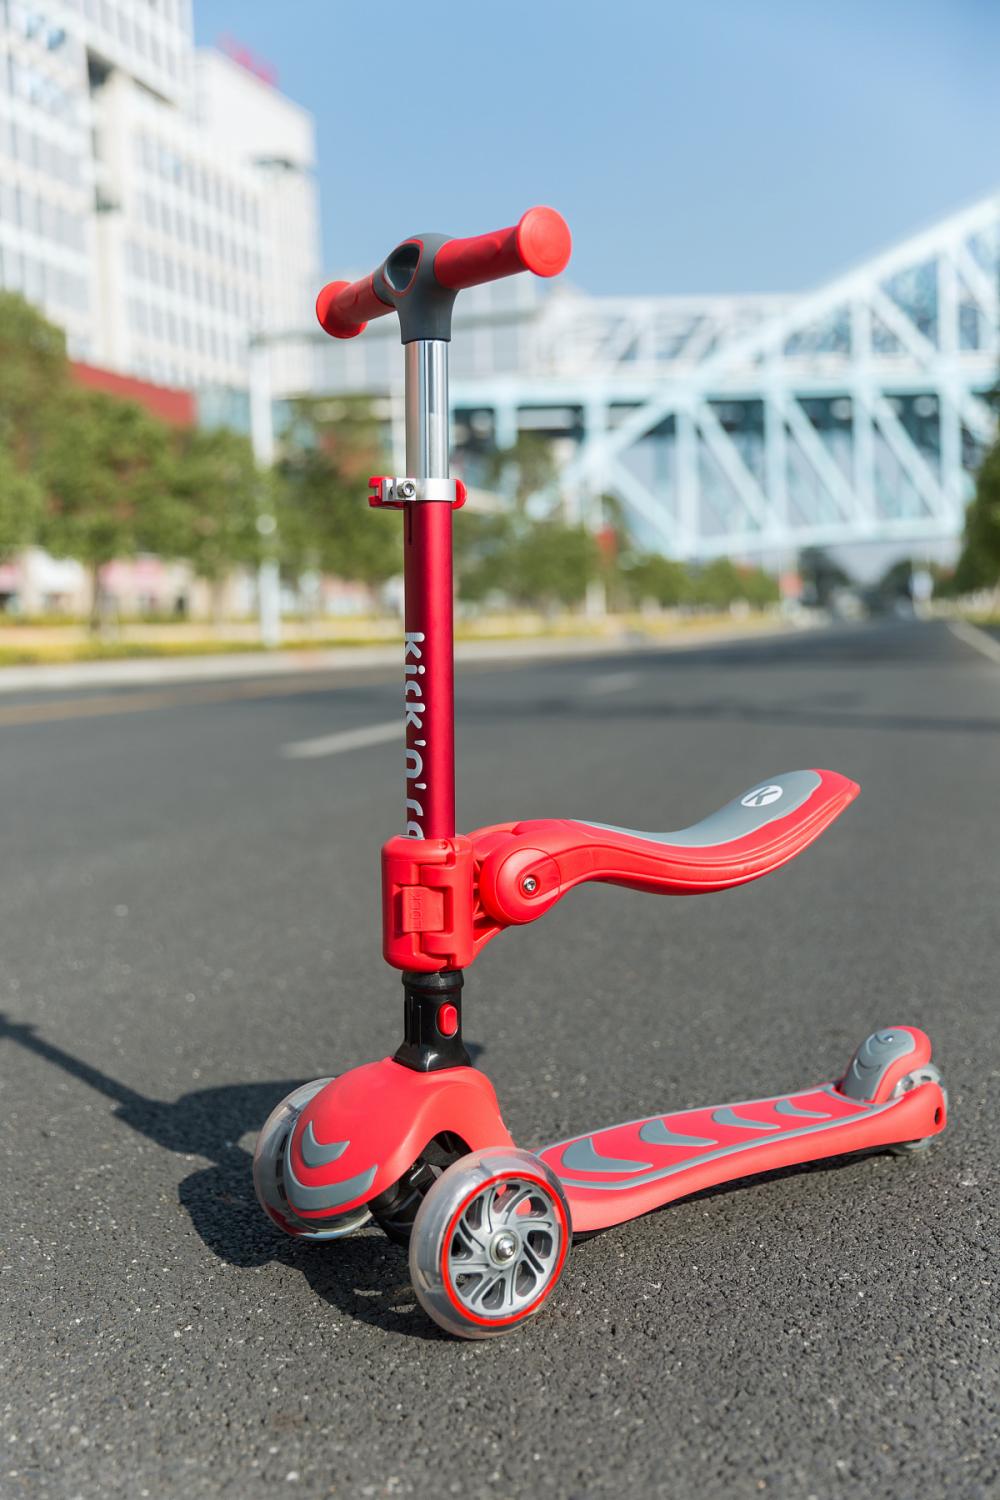 Nouveau design Pu Wheels Ezy Roller Scooter pour les enfants